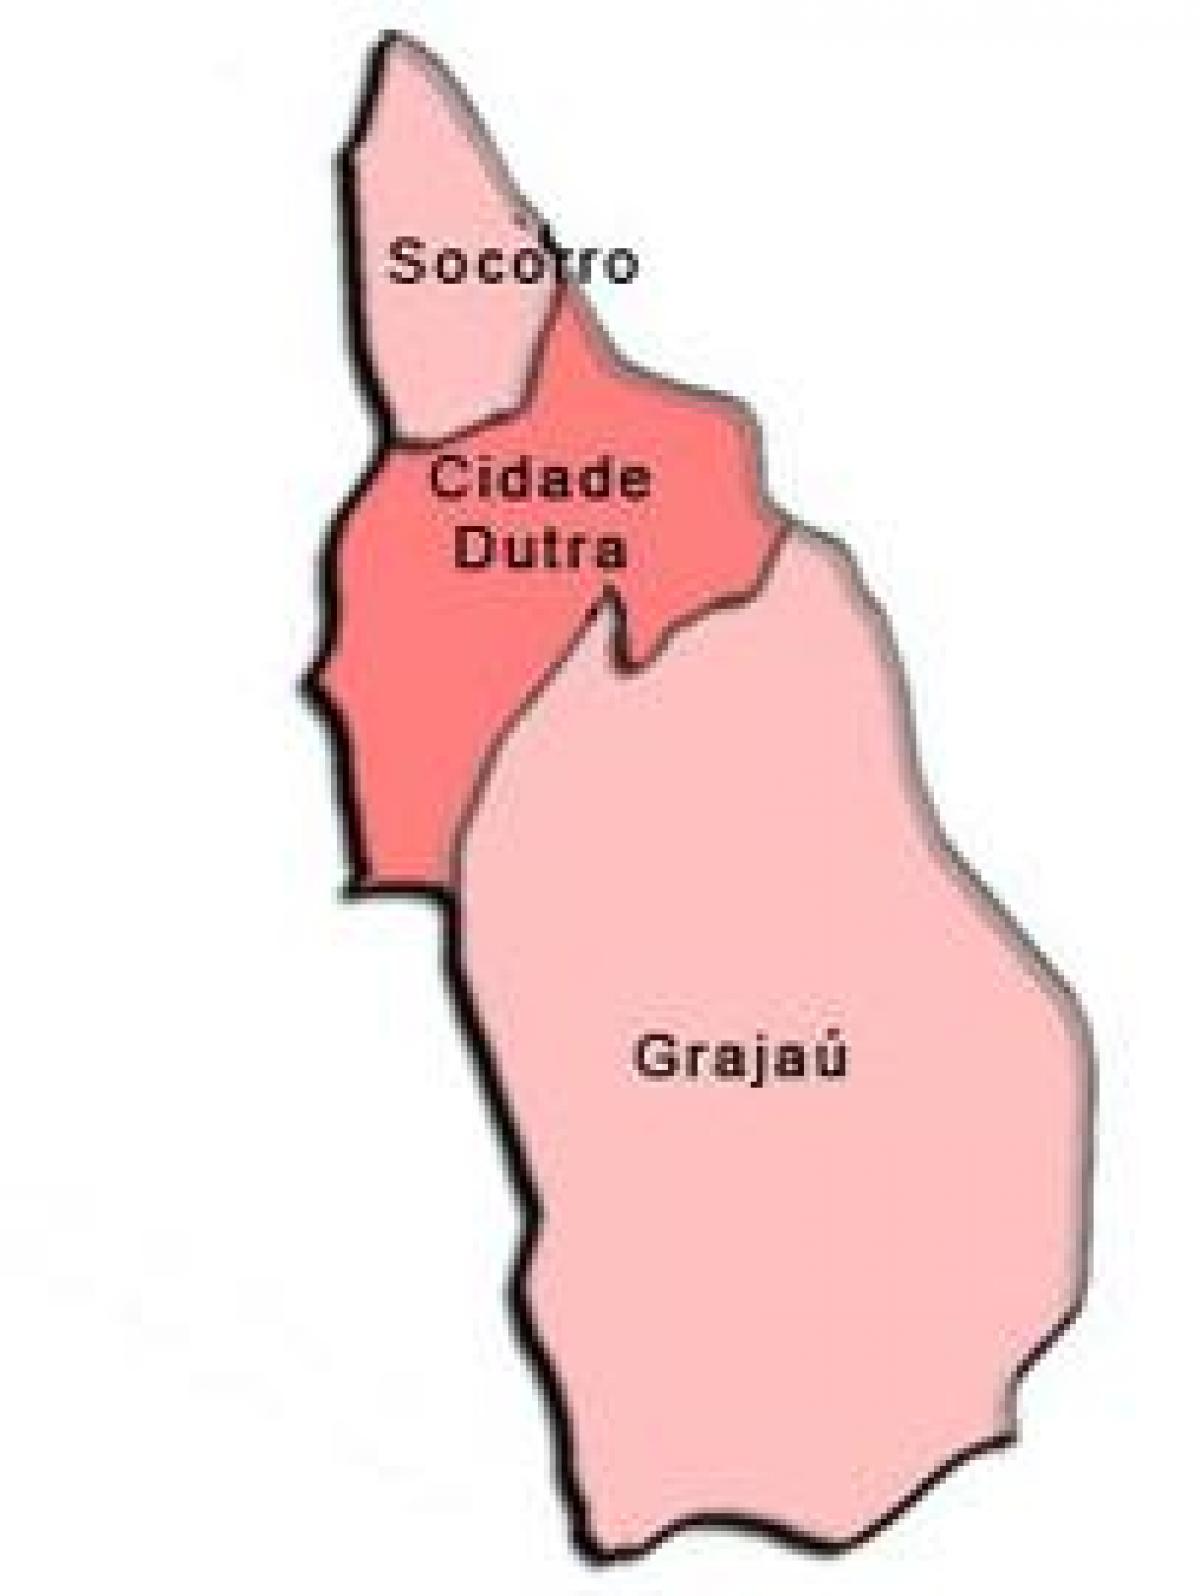 מפה של Capela לעשות סוקורו תת-פריפקטורה